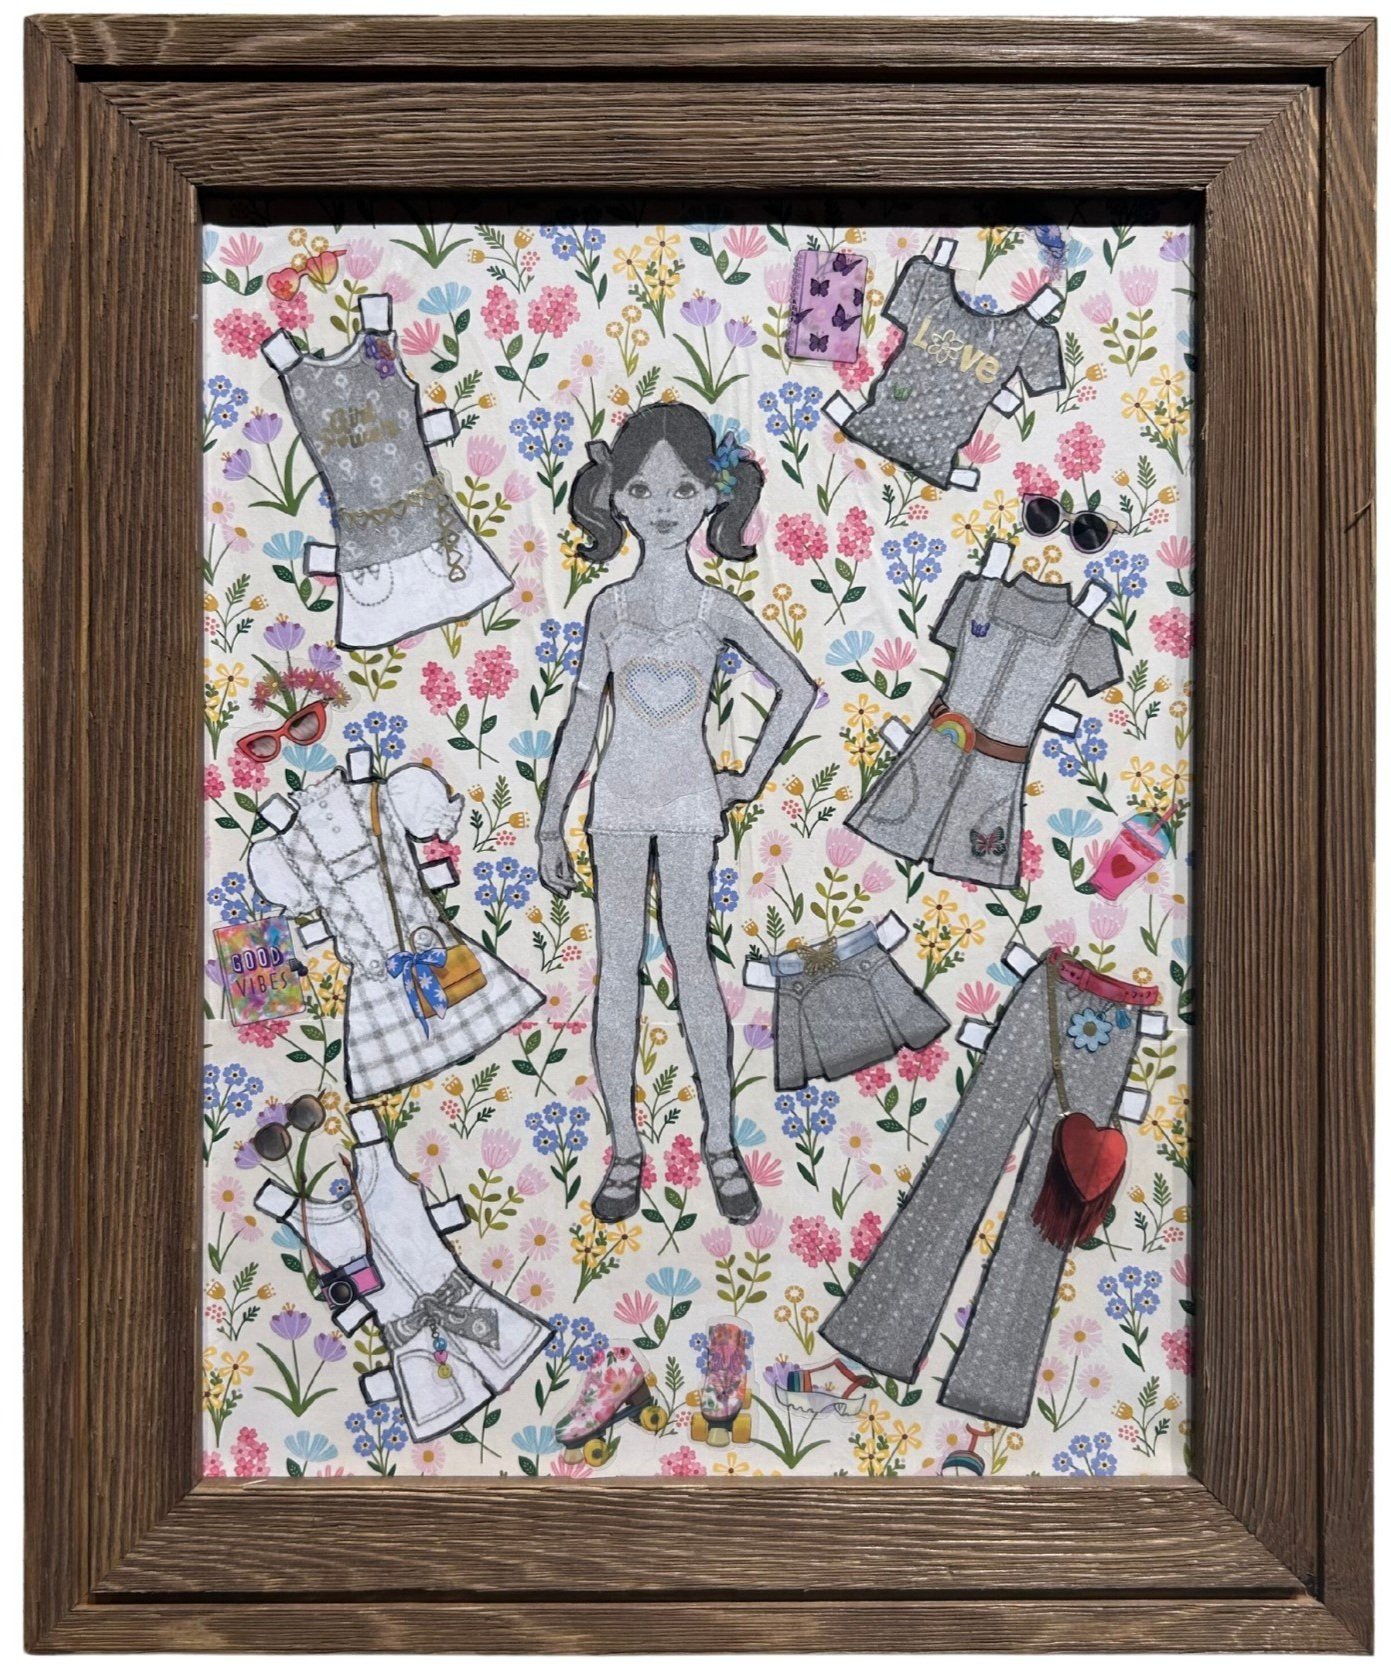 Cheryl Hazelton, "Paper Dolls "